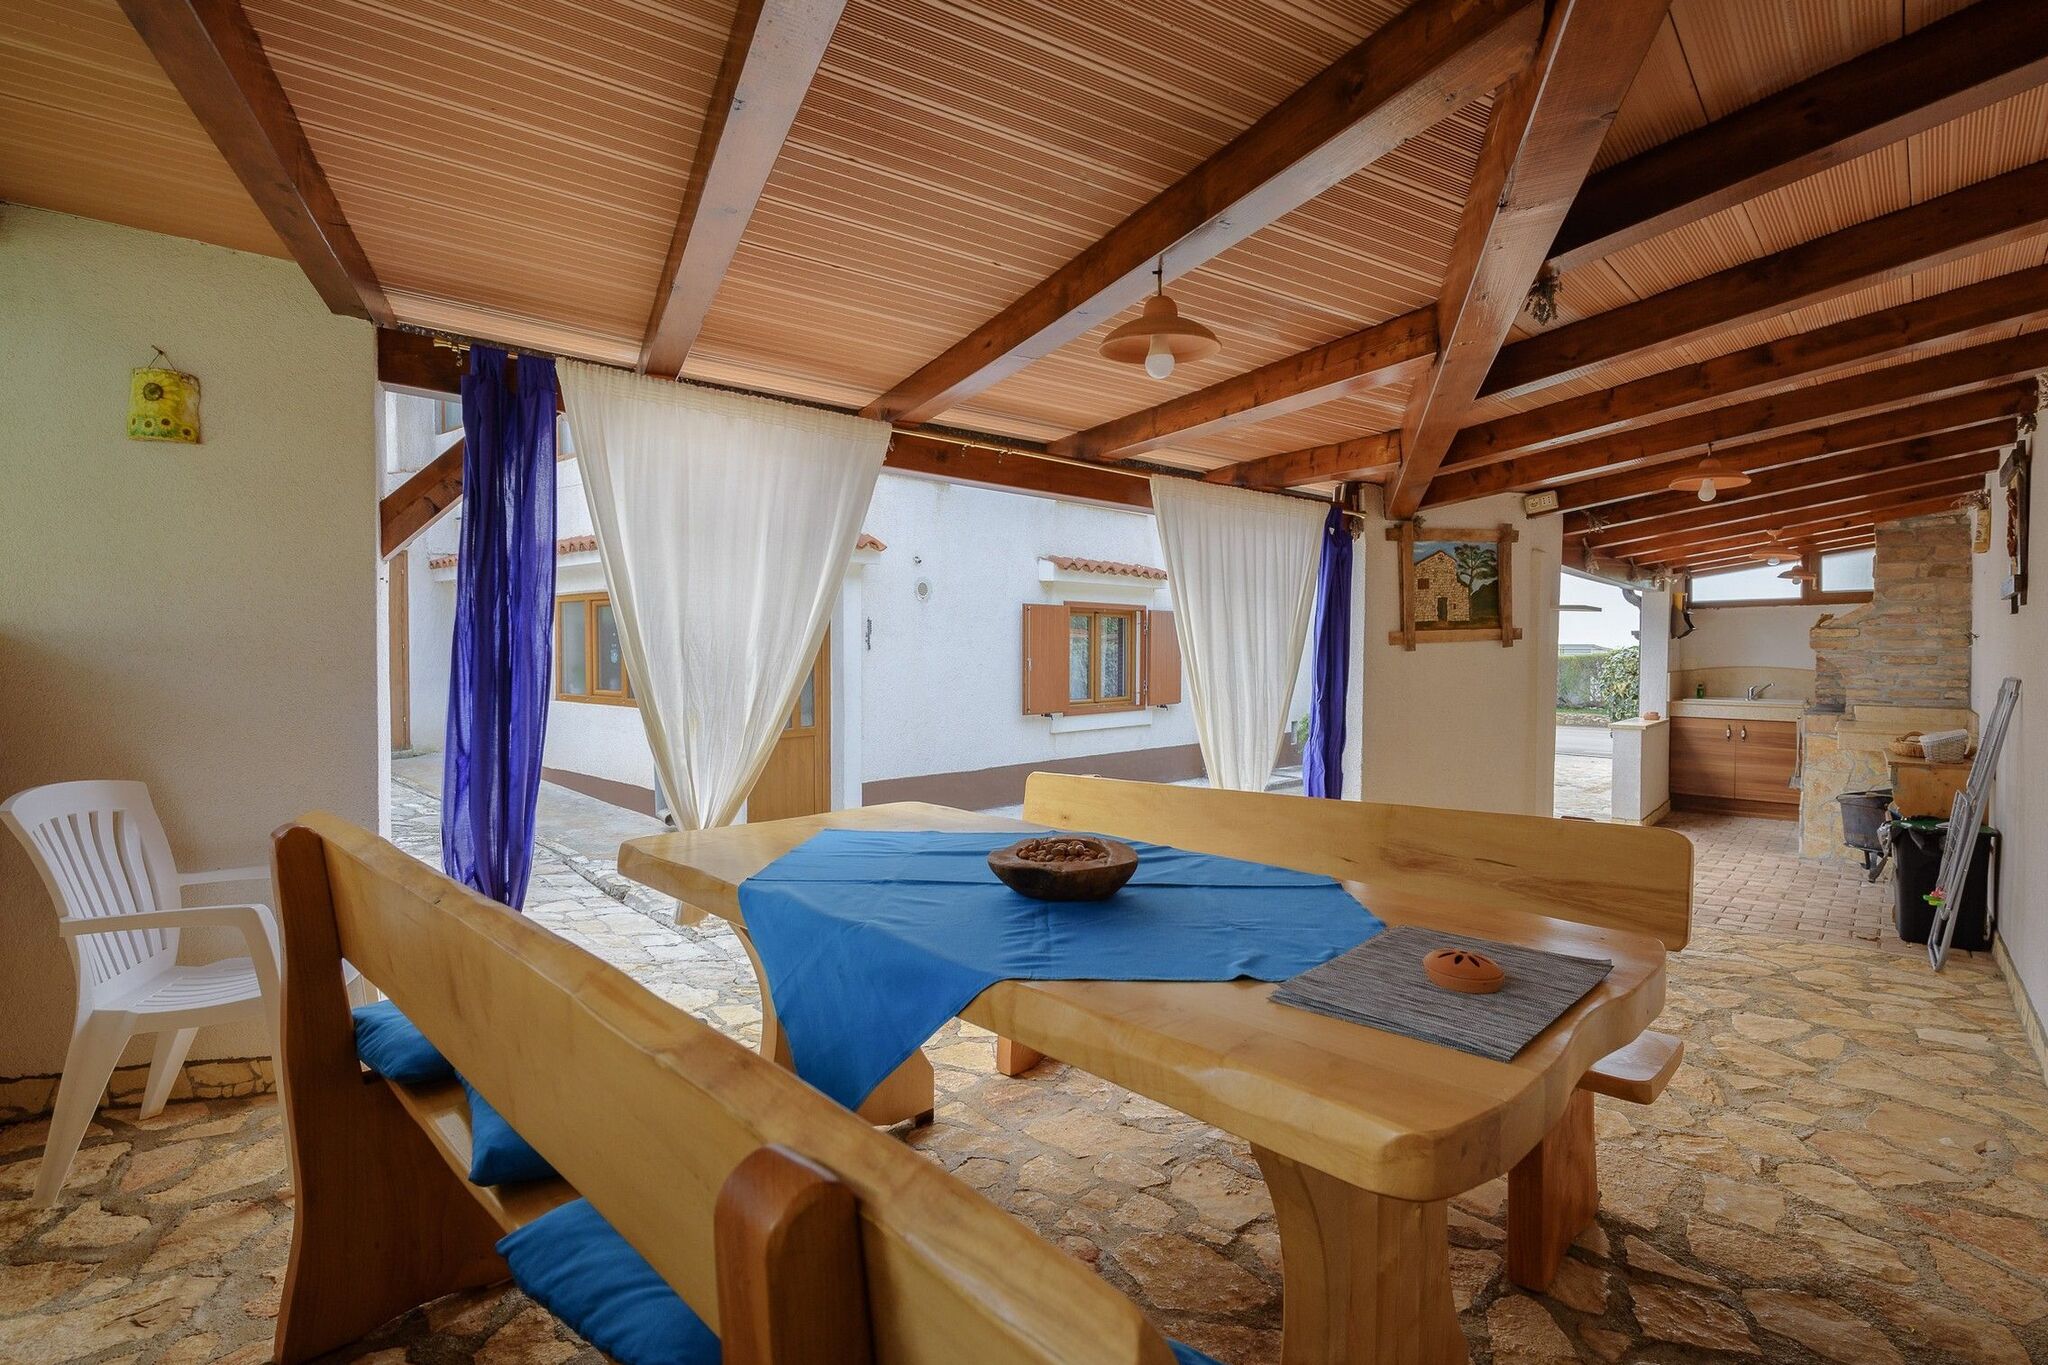 Maison de vacances spacieuse à Istrie, Croatie avec piscine